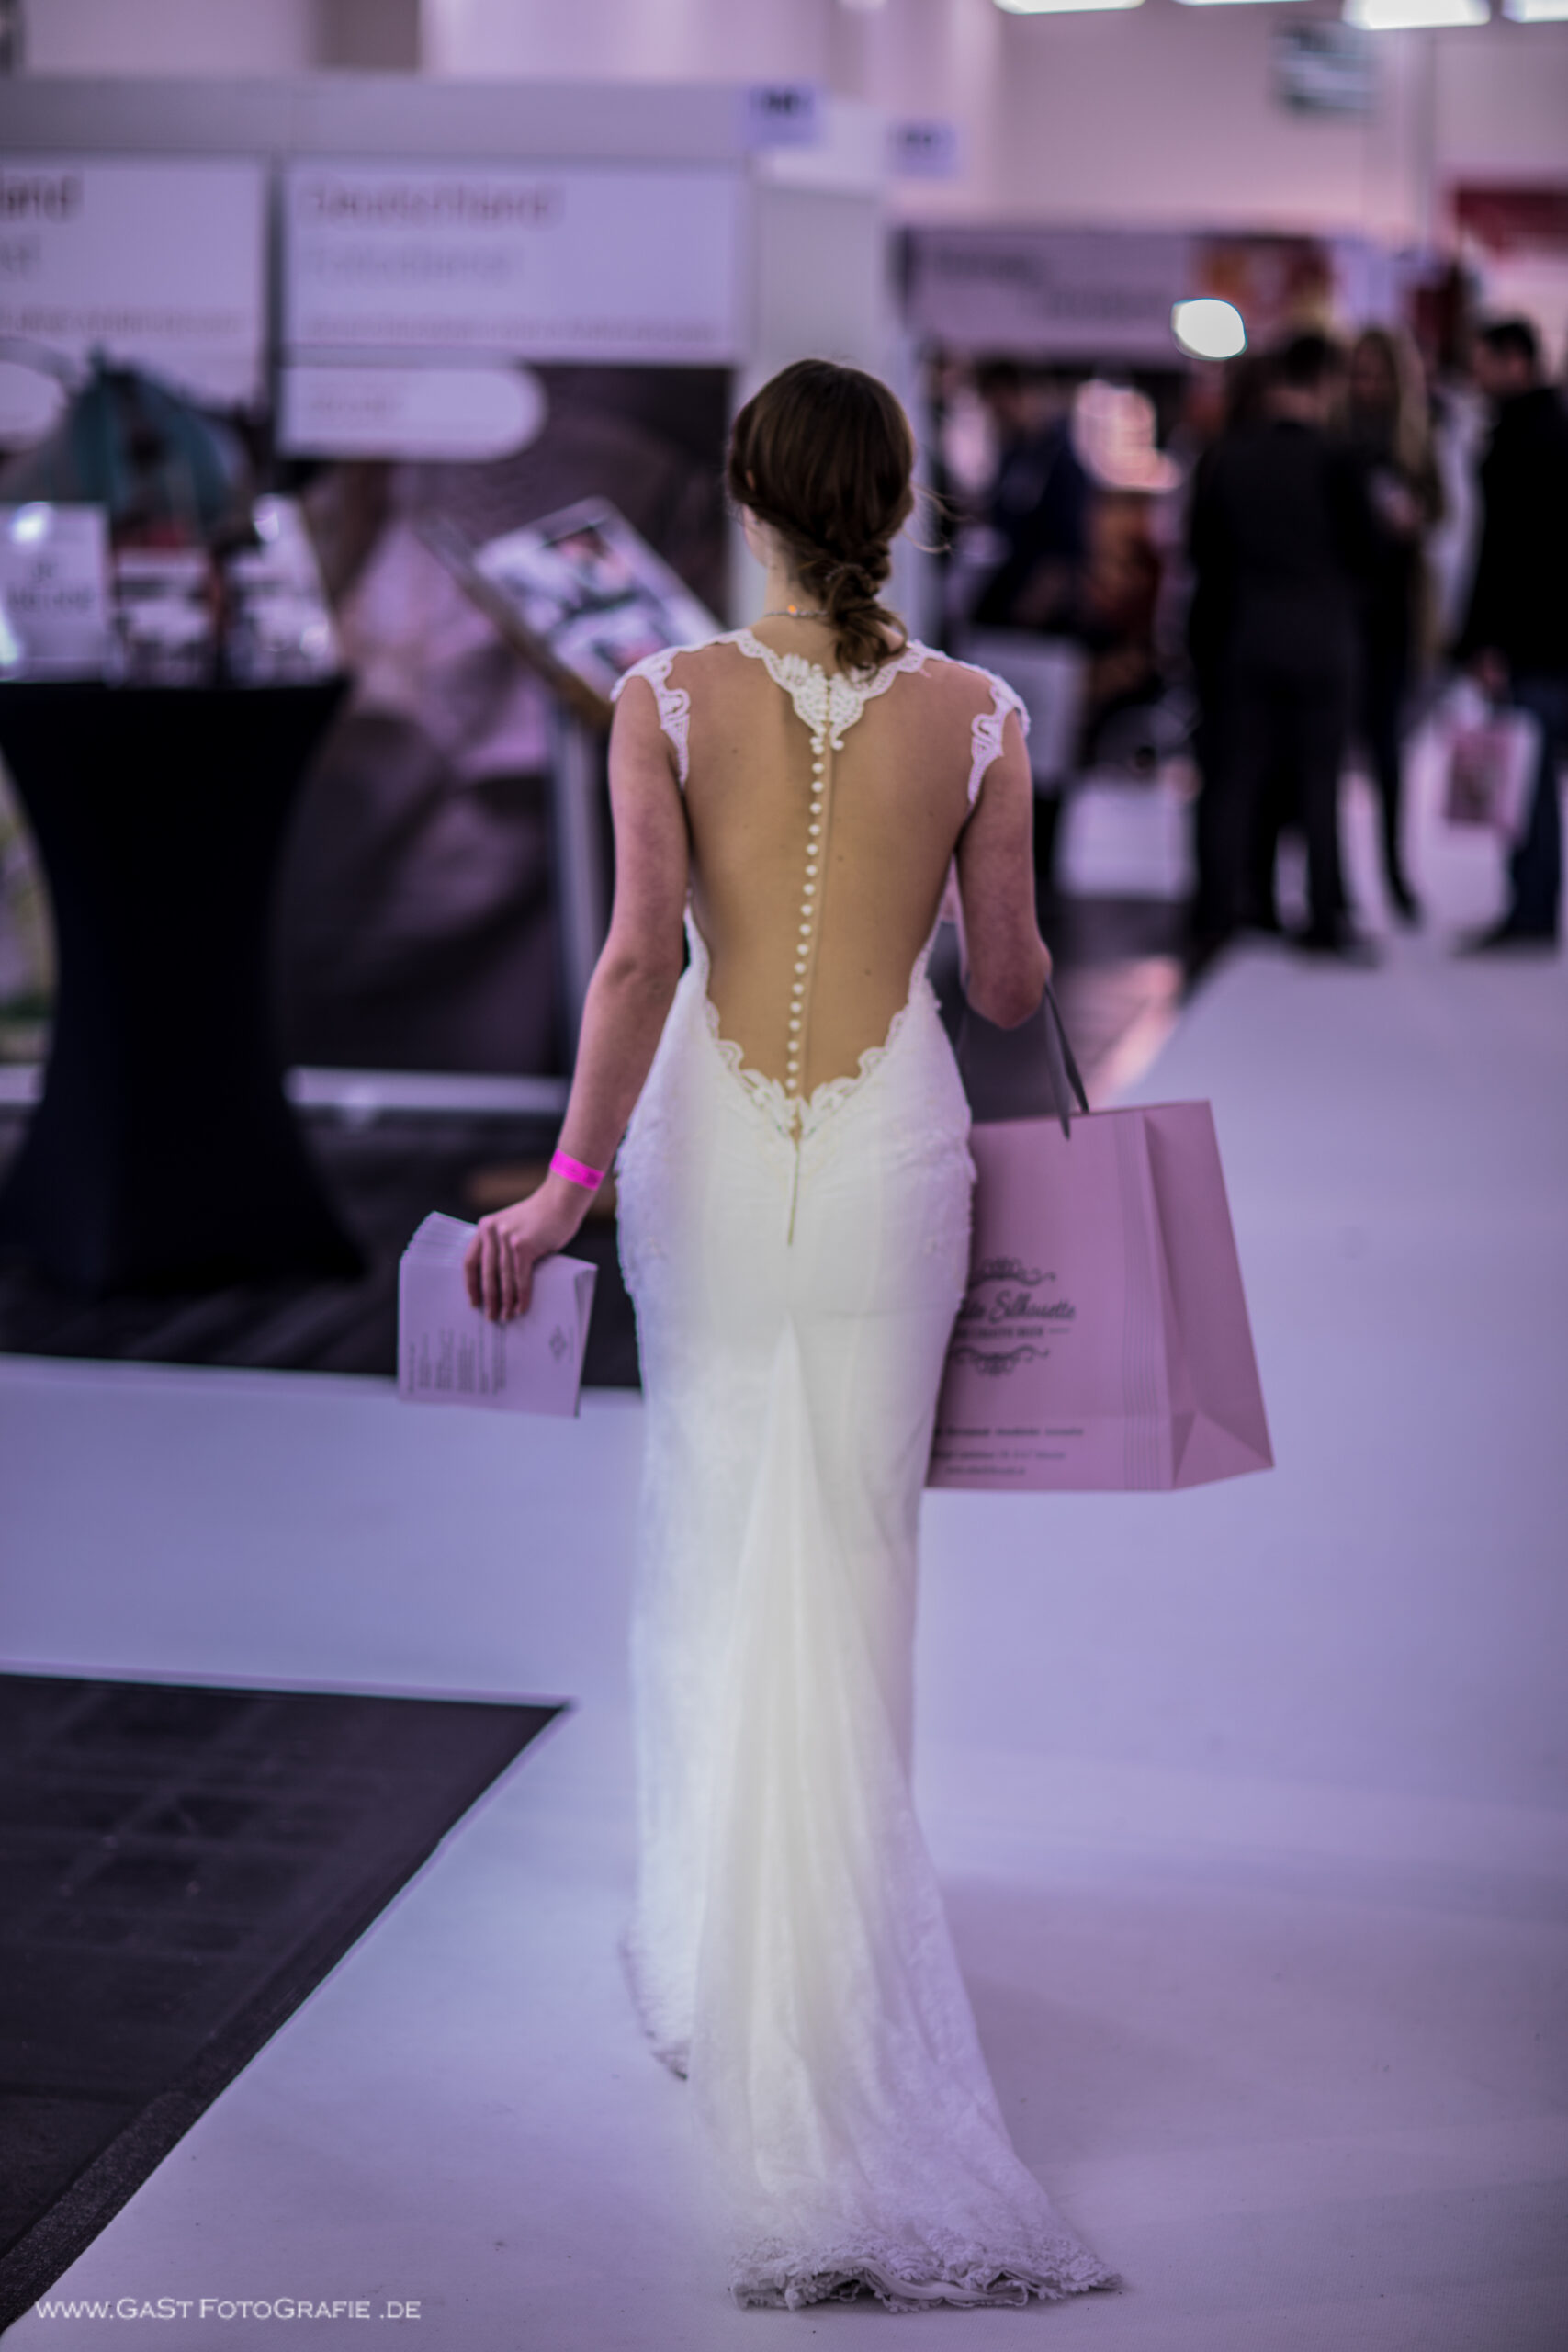 eine junge Frau in weißem Brautkleid mit tiefem Rücken läuft die Gänge einer Messehalle entlang und verteilt Flyer